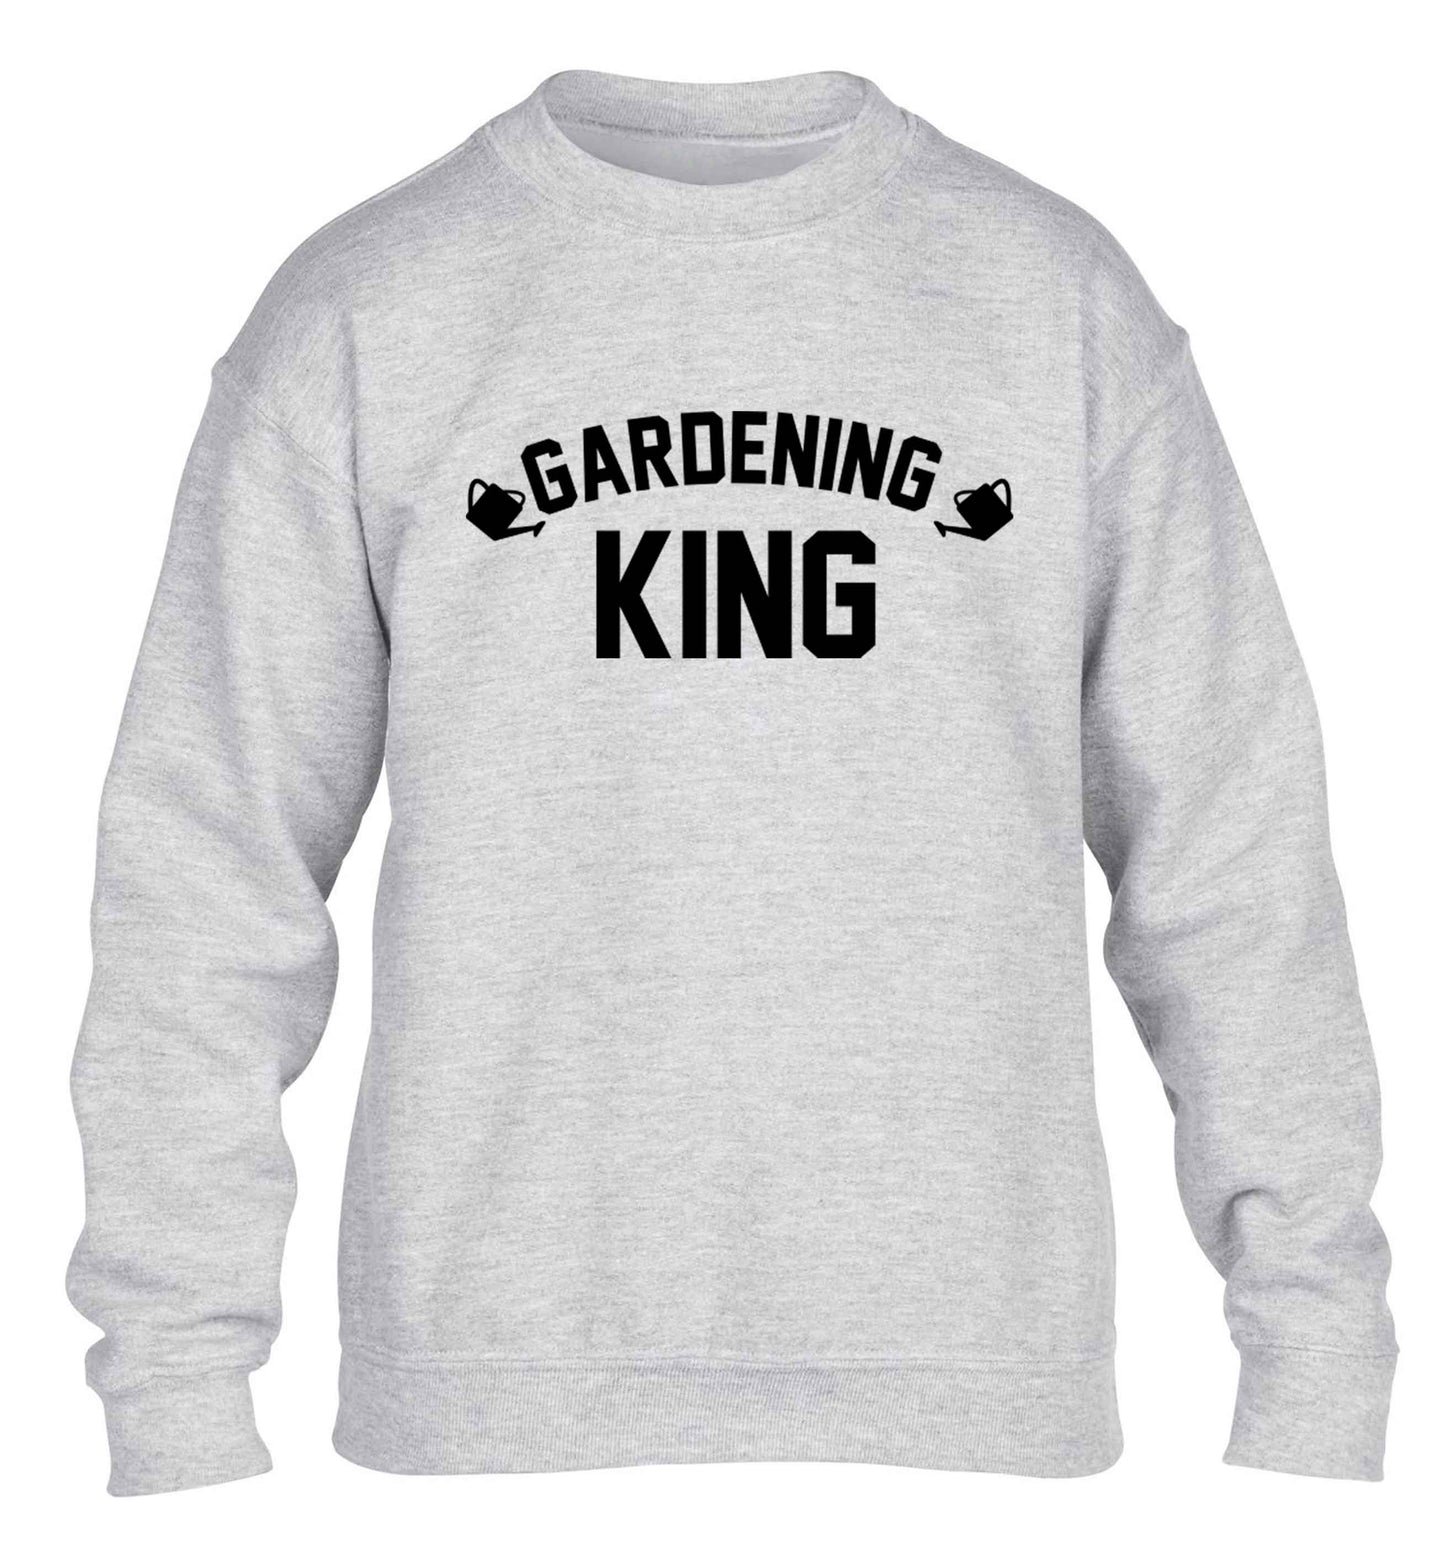 Gardening king children's grey sweater 12-13 Years